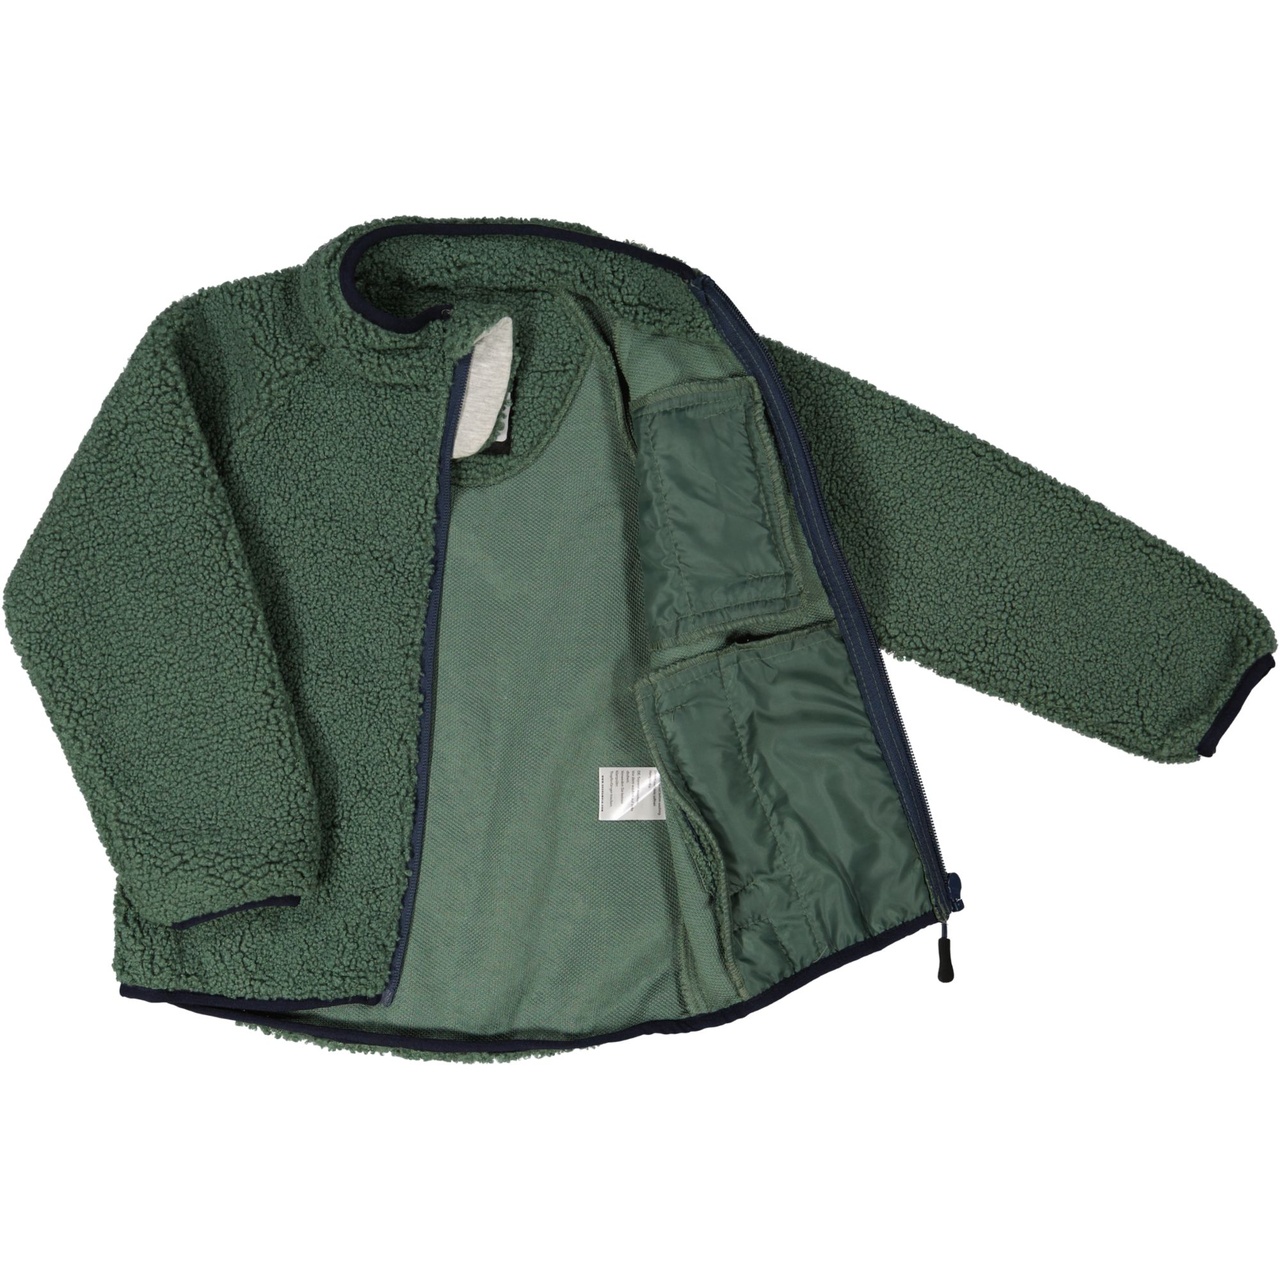 Pile jacket Moss green  74/80